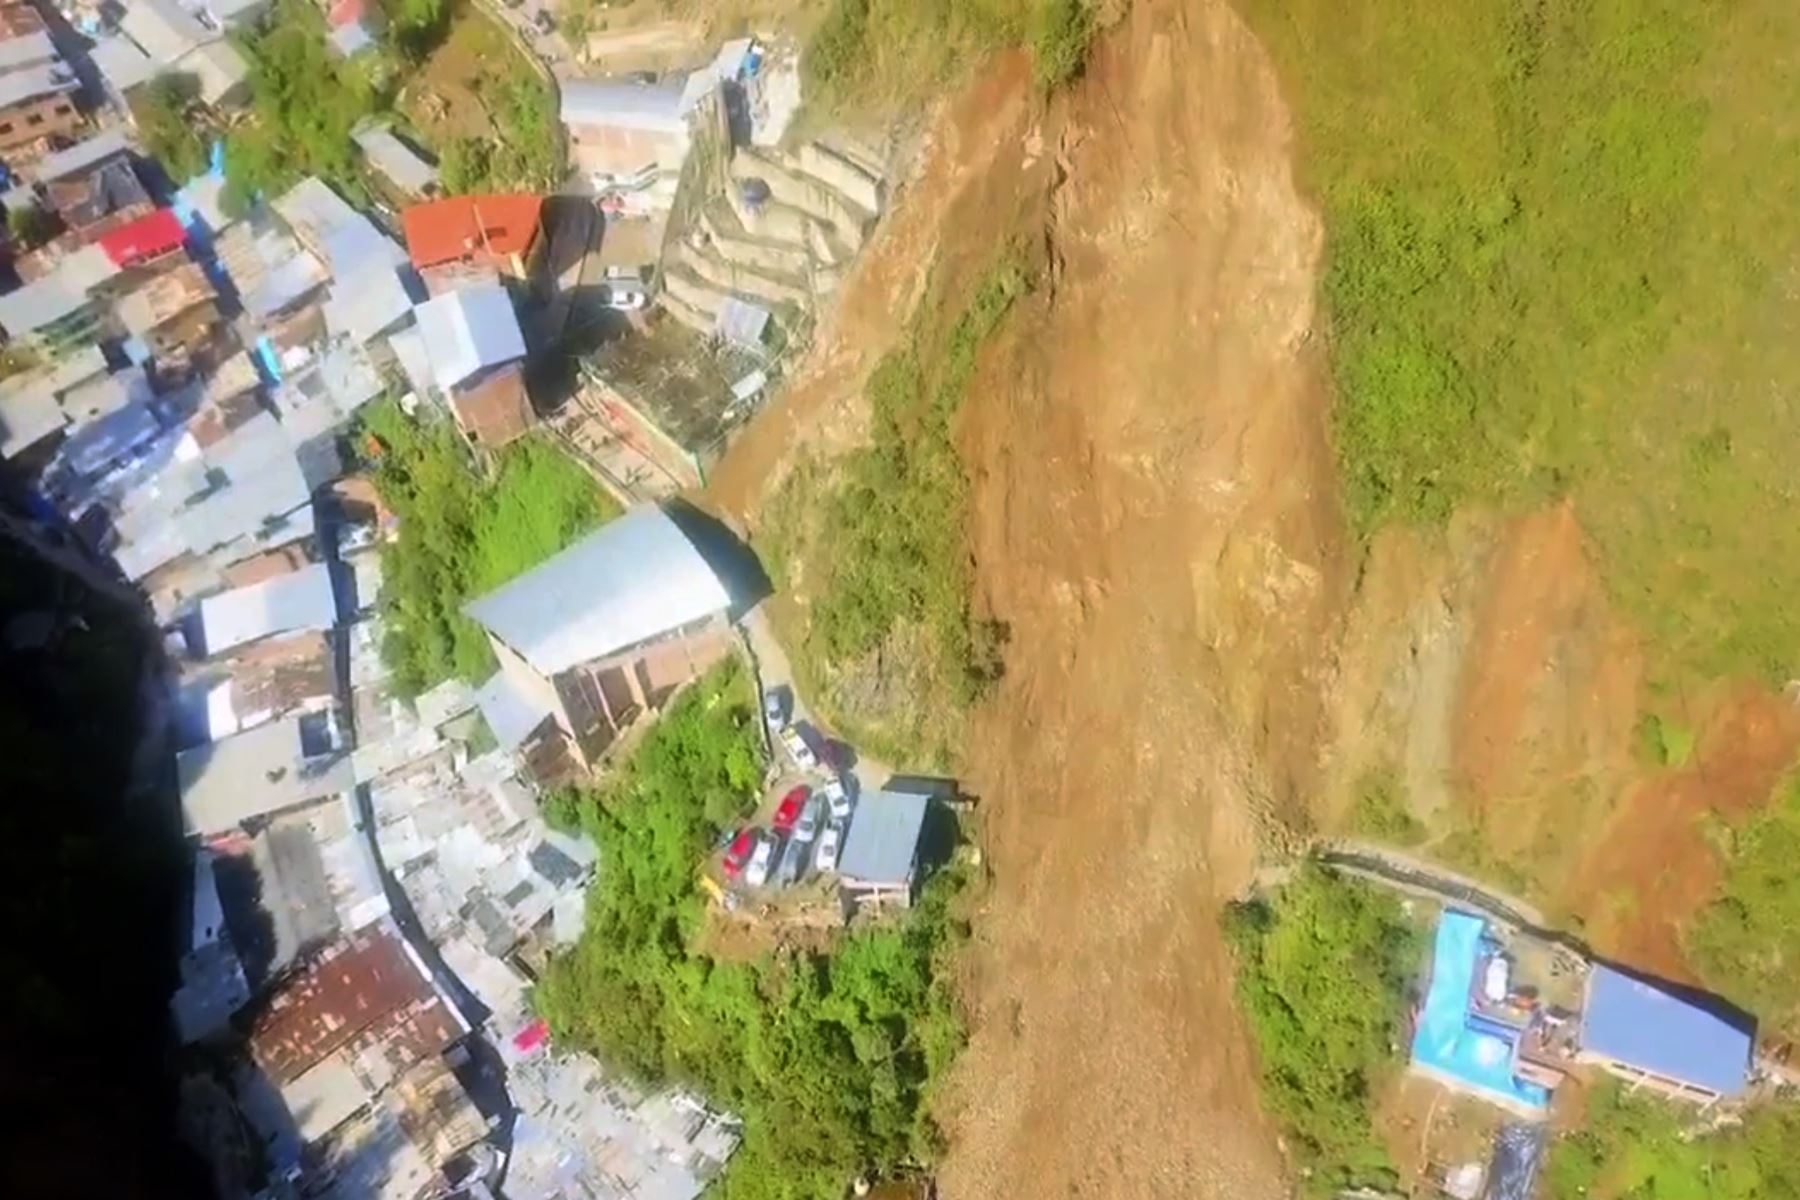 Deslizamiento de tierra y lodo sepultó alrededor de 30 viviendas en el sector cinco esquinas, anexo de Retamas, ubicado en el distrito de Parcoy, provincia de Pataz, en la sierra de la región La Libertad.Facebook / Said Velasquez